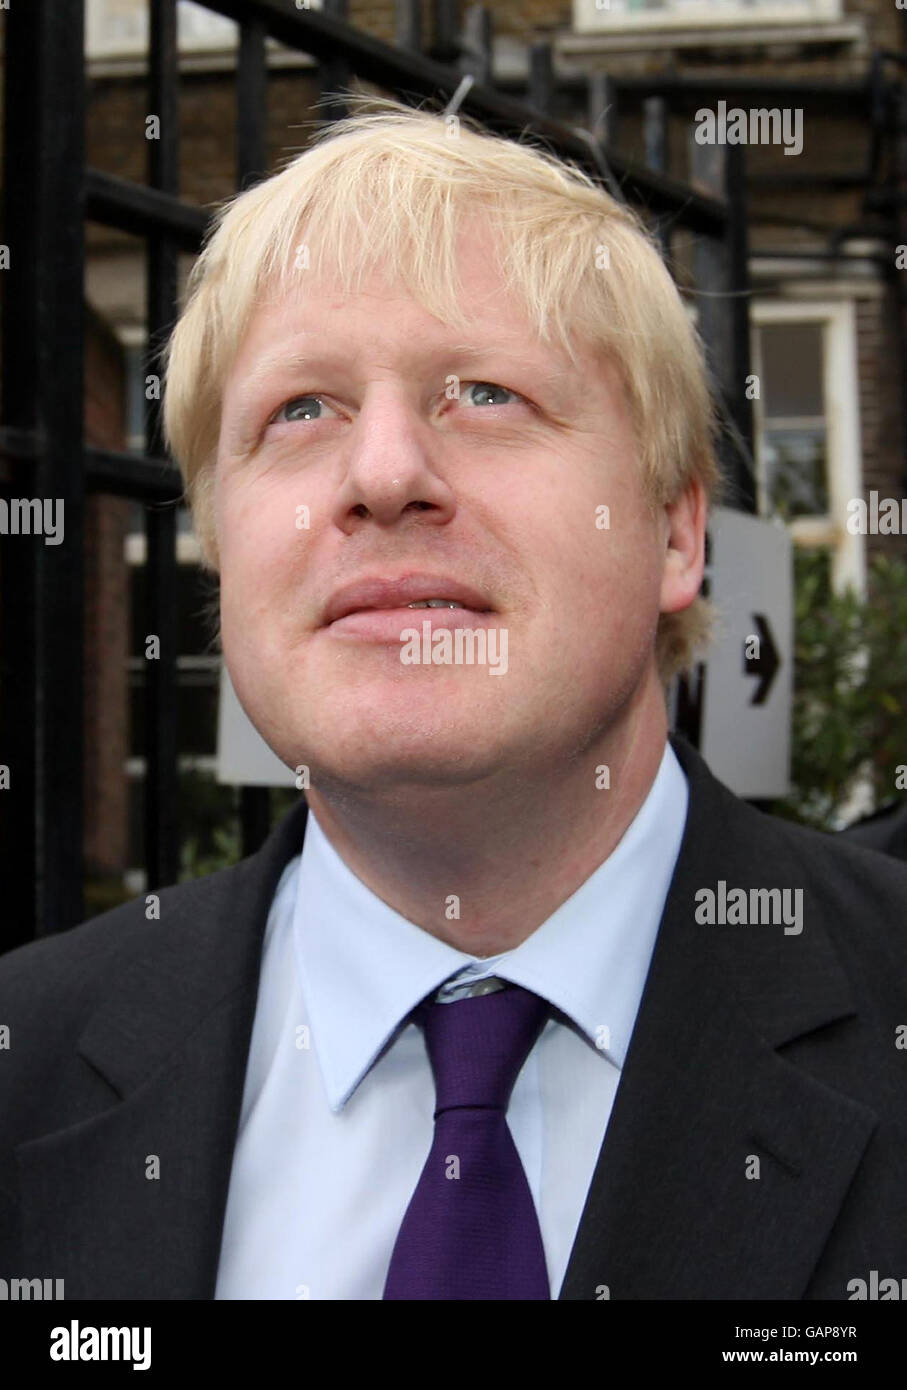 Der konservative Kandidat für den Londoner Bürgermeister Boris Johnson verlässt ein Wahllokal an der Laycock Primary School, Islington, London, nachdem er bei den heutigen London Mayoral- und Kommunalwahlen gestimmt hat. Stockfoto